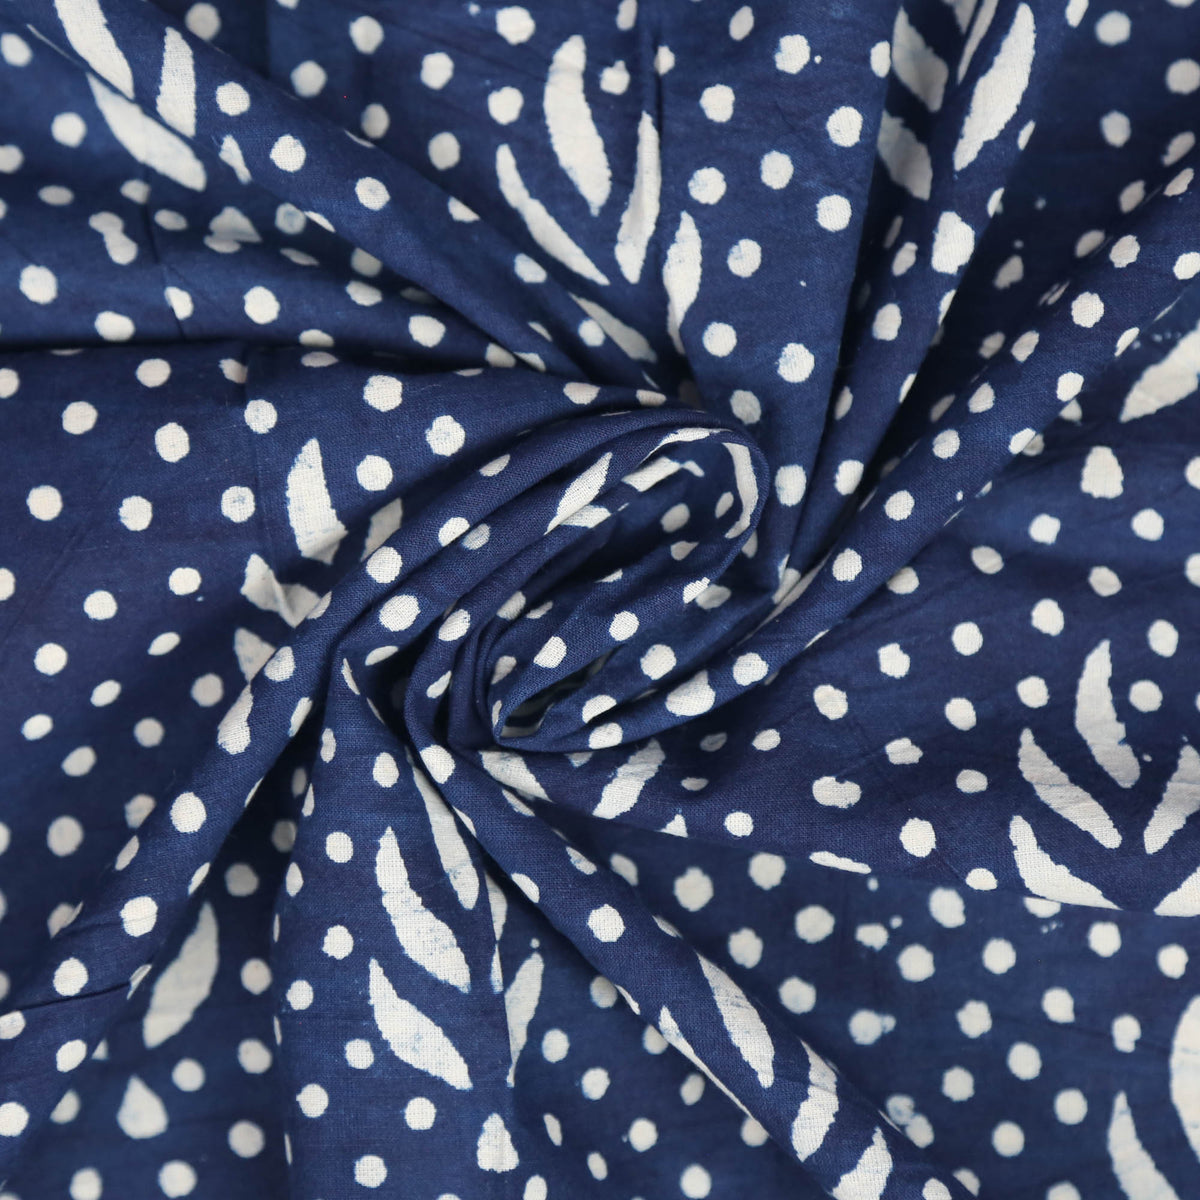 Block Print Fabric - Indigo Polaka Dots Floral ( Design 485)